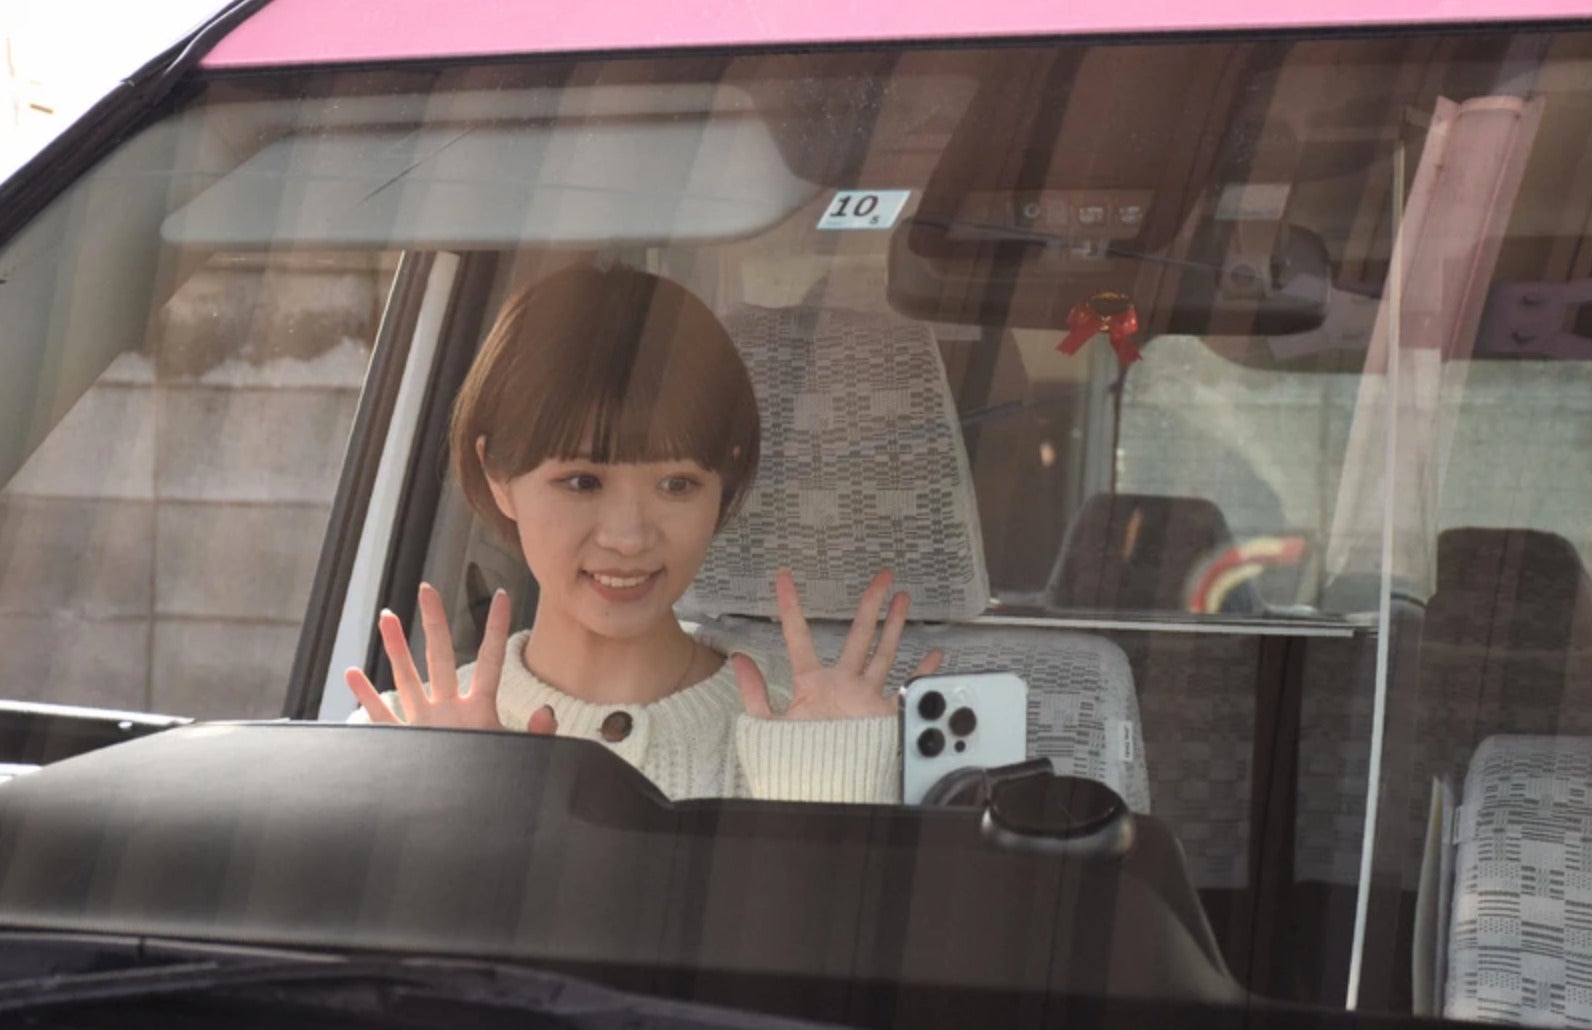 คนขับแท็กซี่น่ารัก แม่เลี้ยงเดี่ยว ญี่ปุ่น